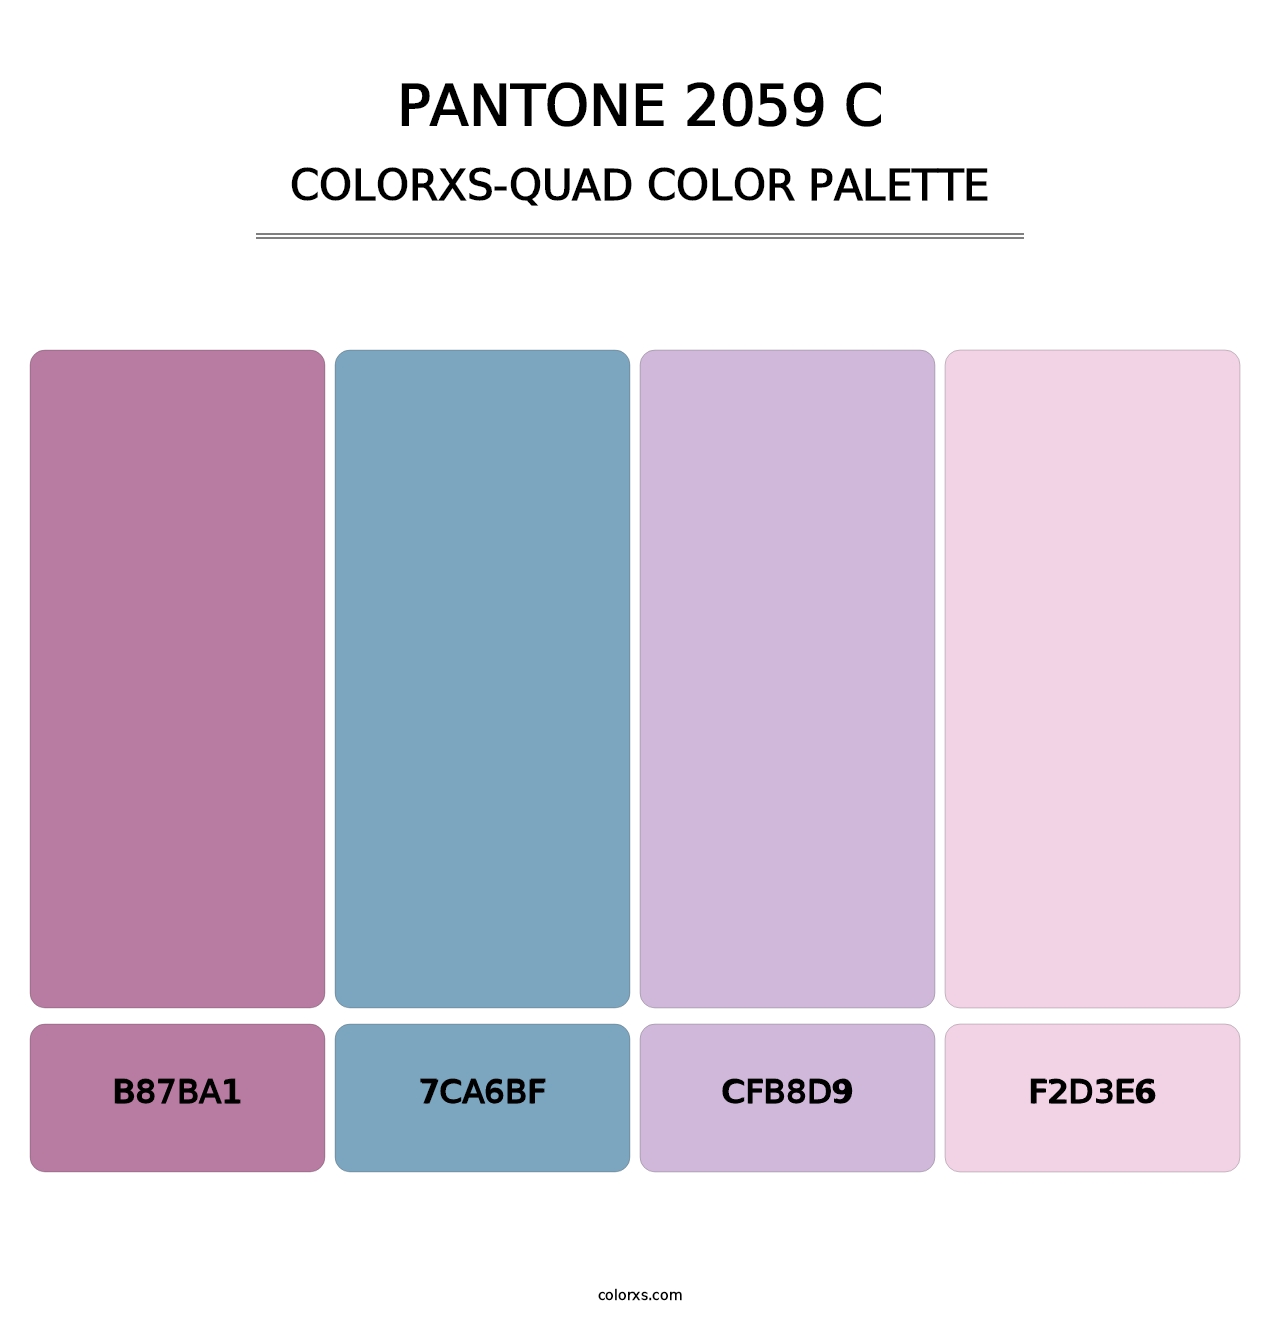 PANTONE 2059 C - Colorxs Quad Palette